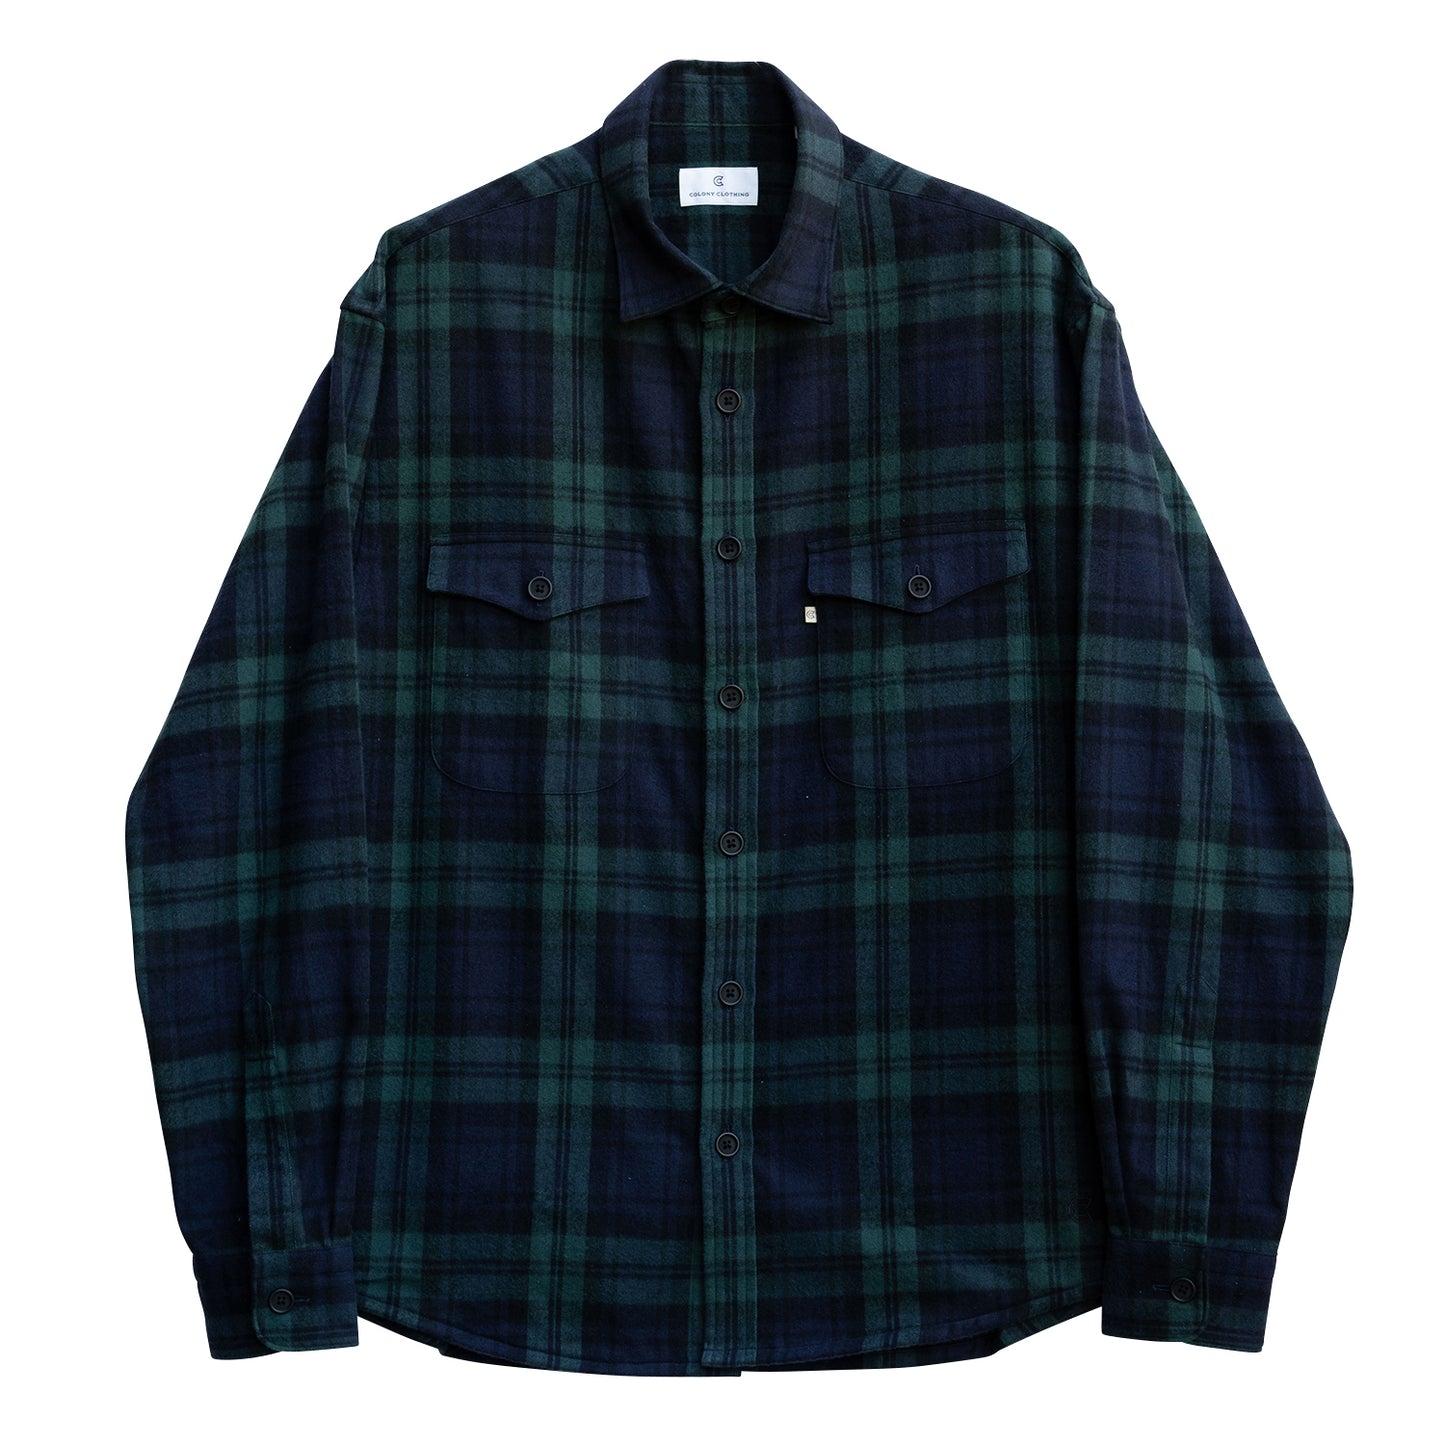 COLONY CLOTHING / ブラックウォッチ ダブルポケットシャツ / CC2302-SH05